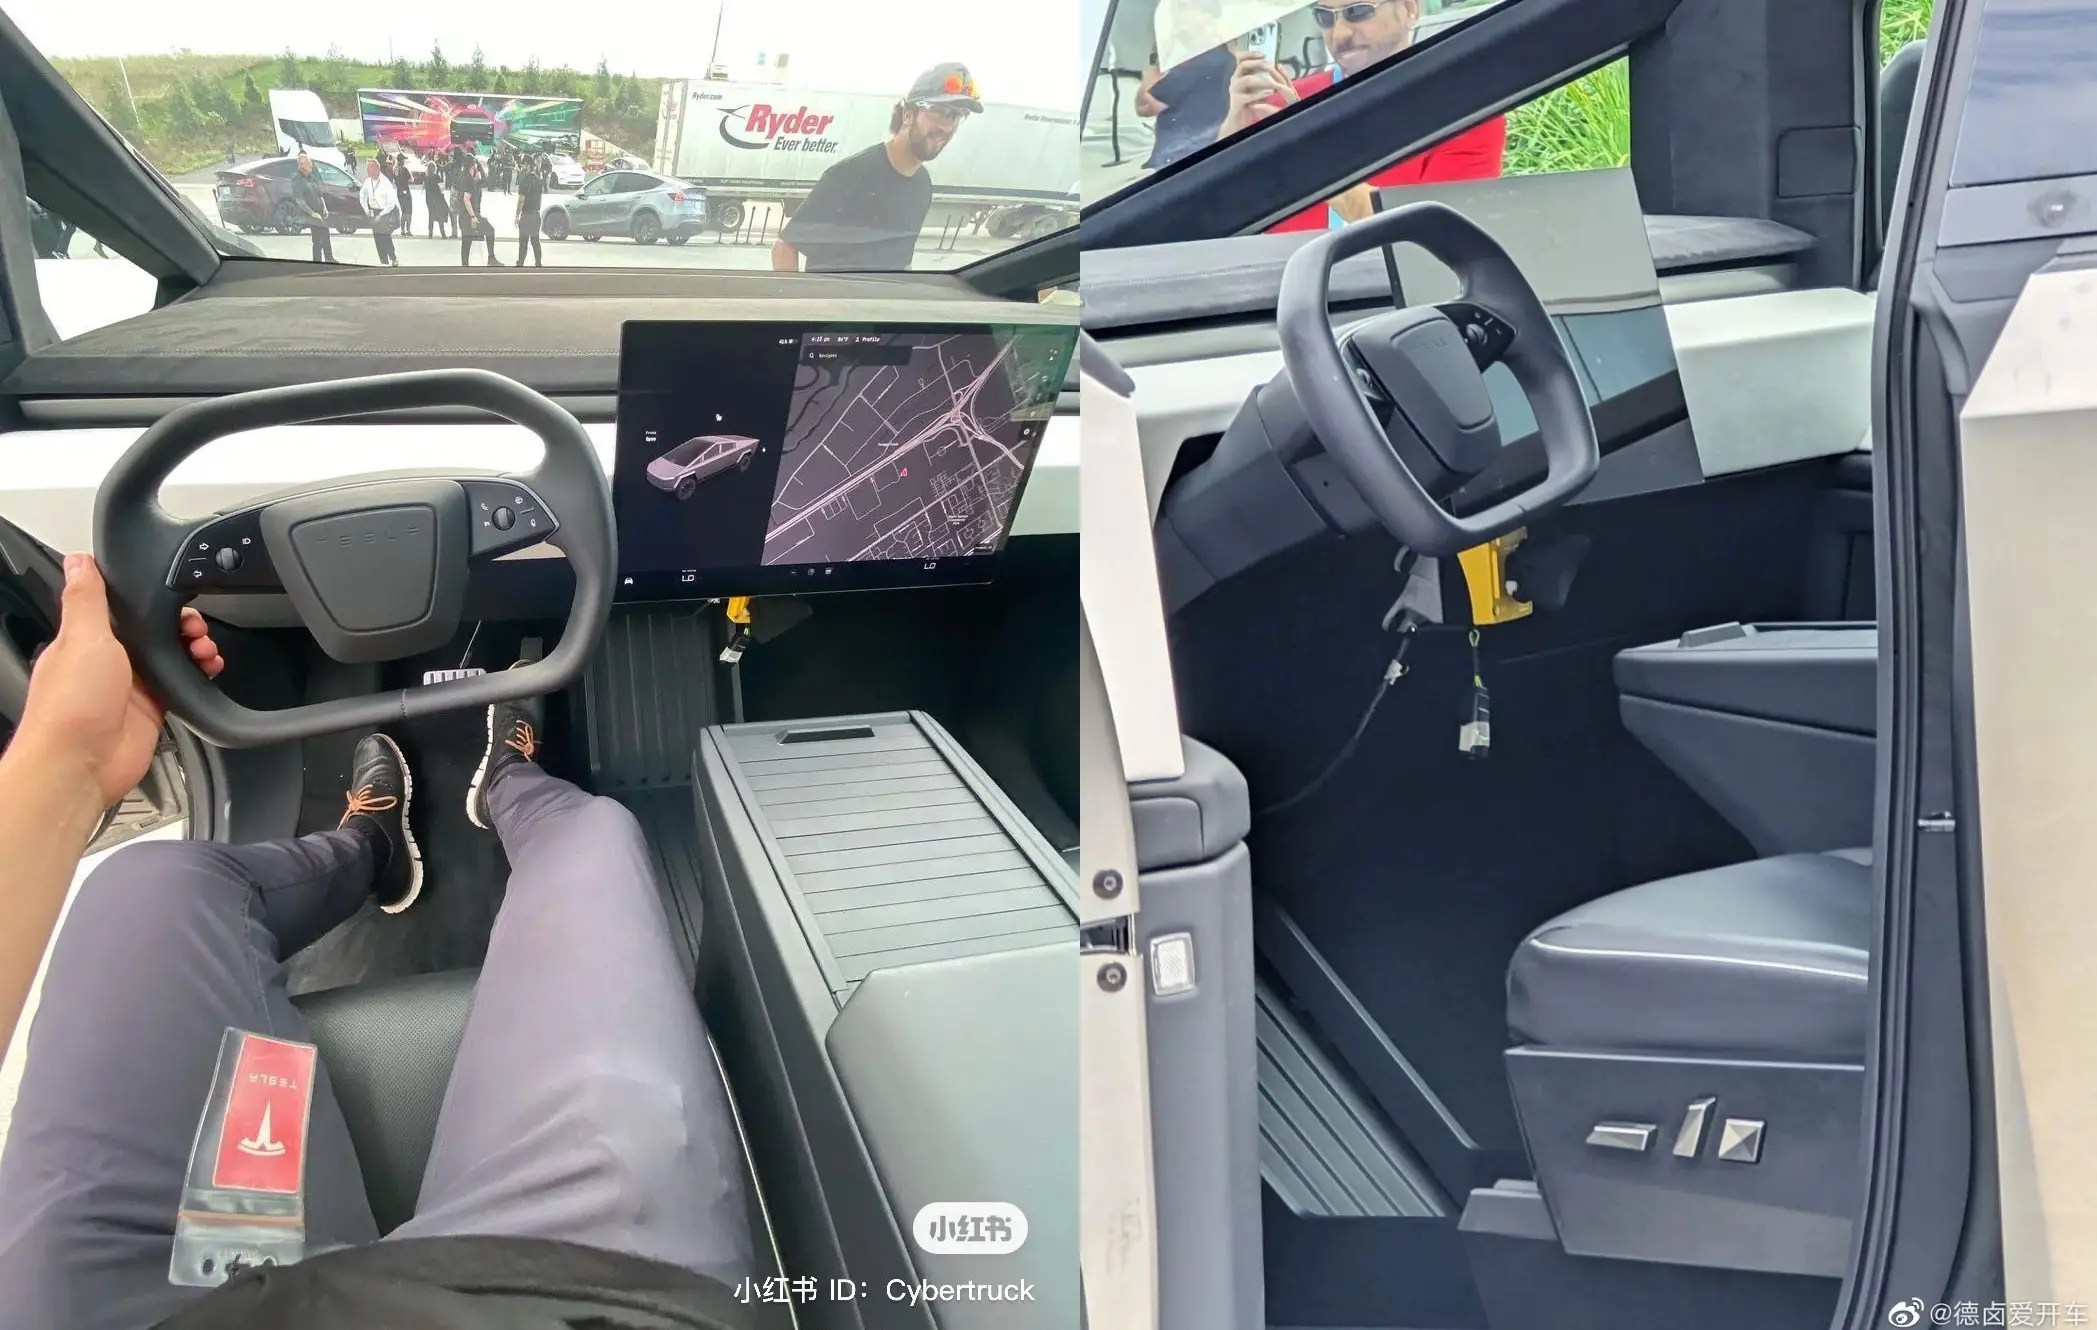 cybertruck interiors - Tesla Cybertruck May Offer Optional Round Steering Wheel Alongside Hybrid Yoke